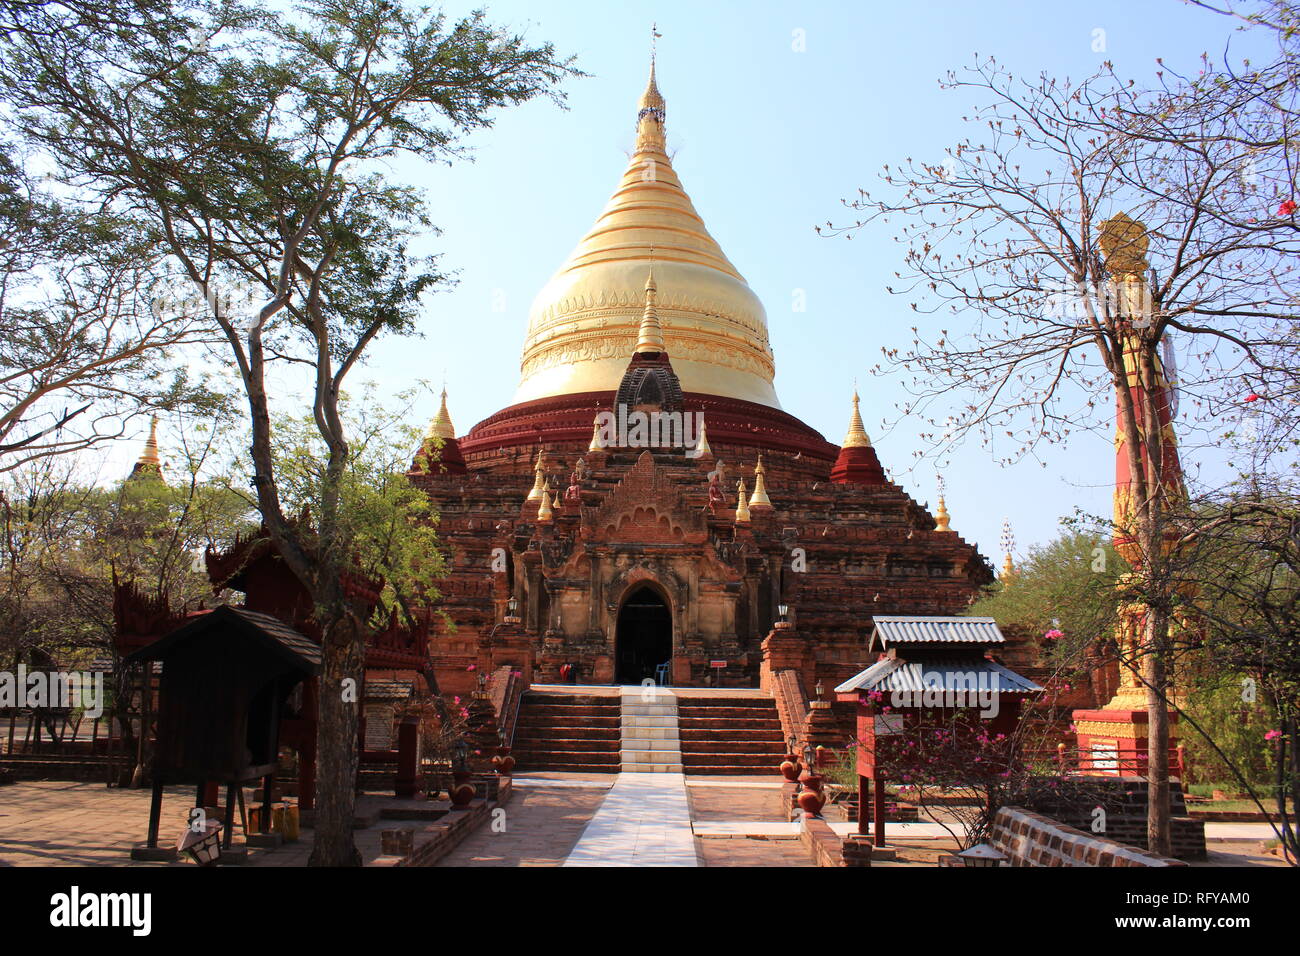 Temple avec dôme doré sur une chaude journée ensoleillée à Bagan, Myanmar Banque D'Images